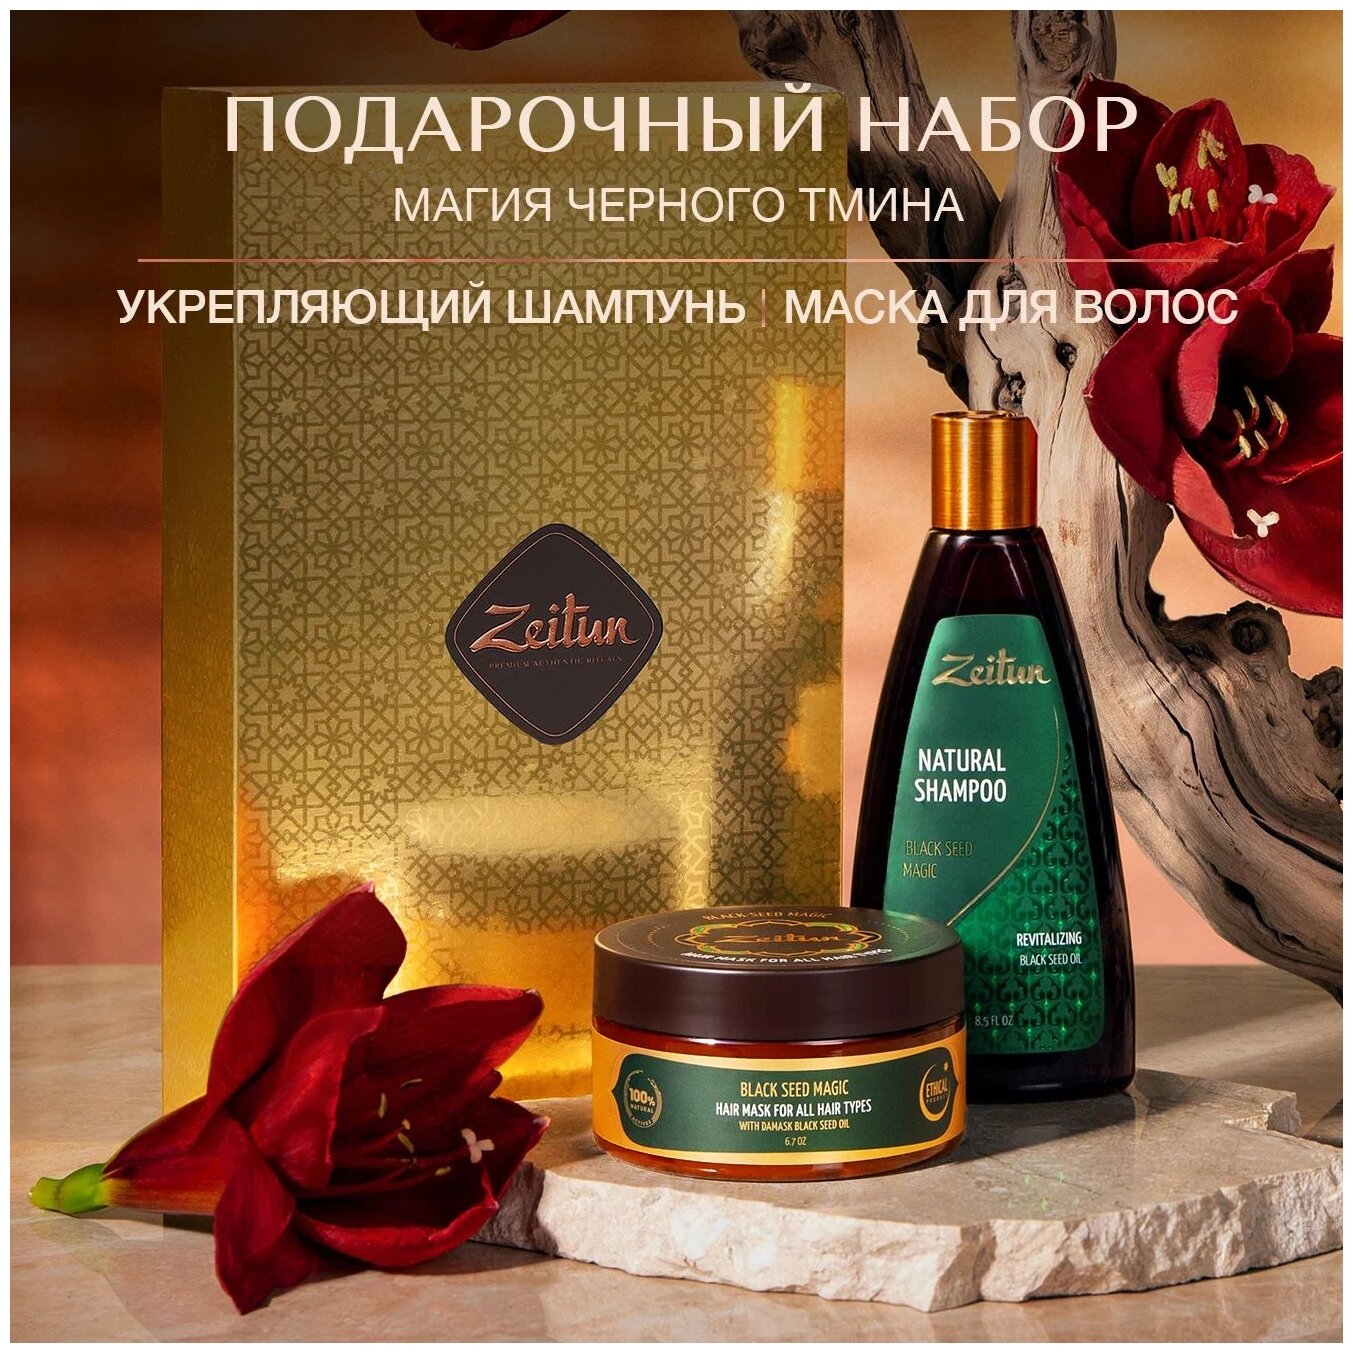 Zeitun Набор подарочный косметический для волос Магия черного тмина: бессульфатный шампунь и маска для волос. Подарок для женщин набор для волос.